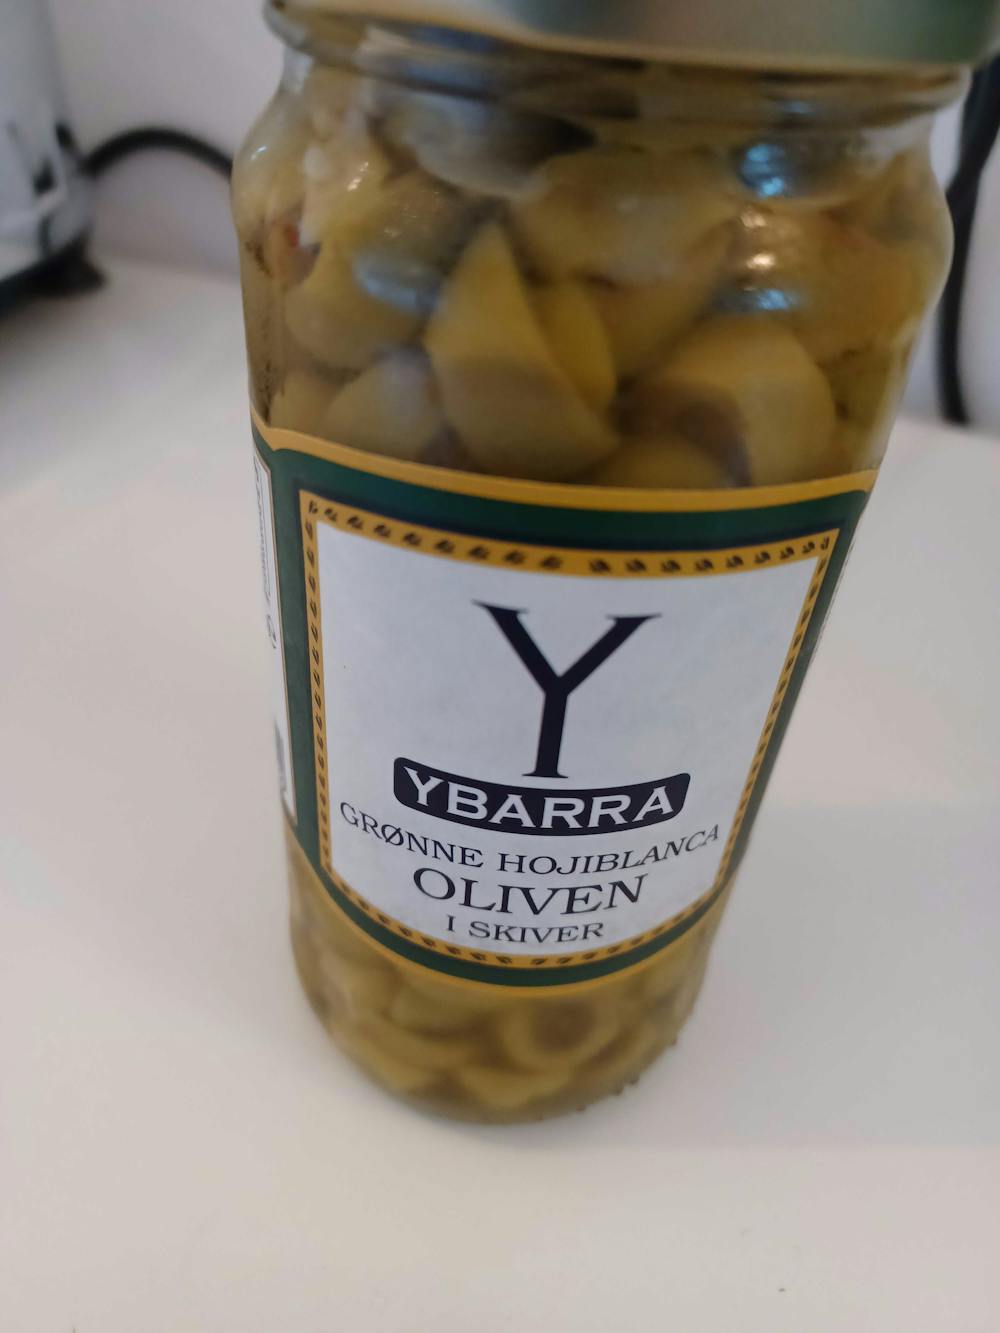 Grønne hojablanca oliven, i skiver, Ybarra